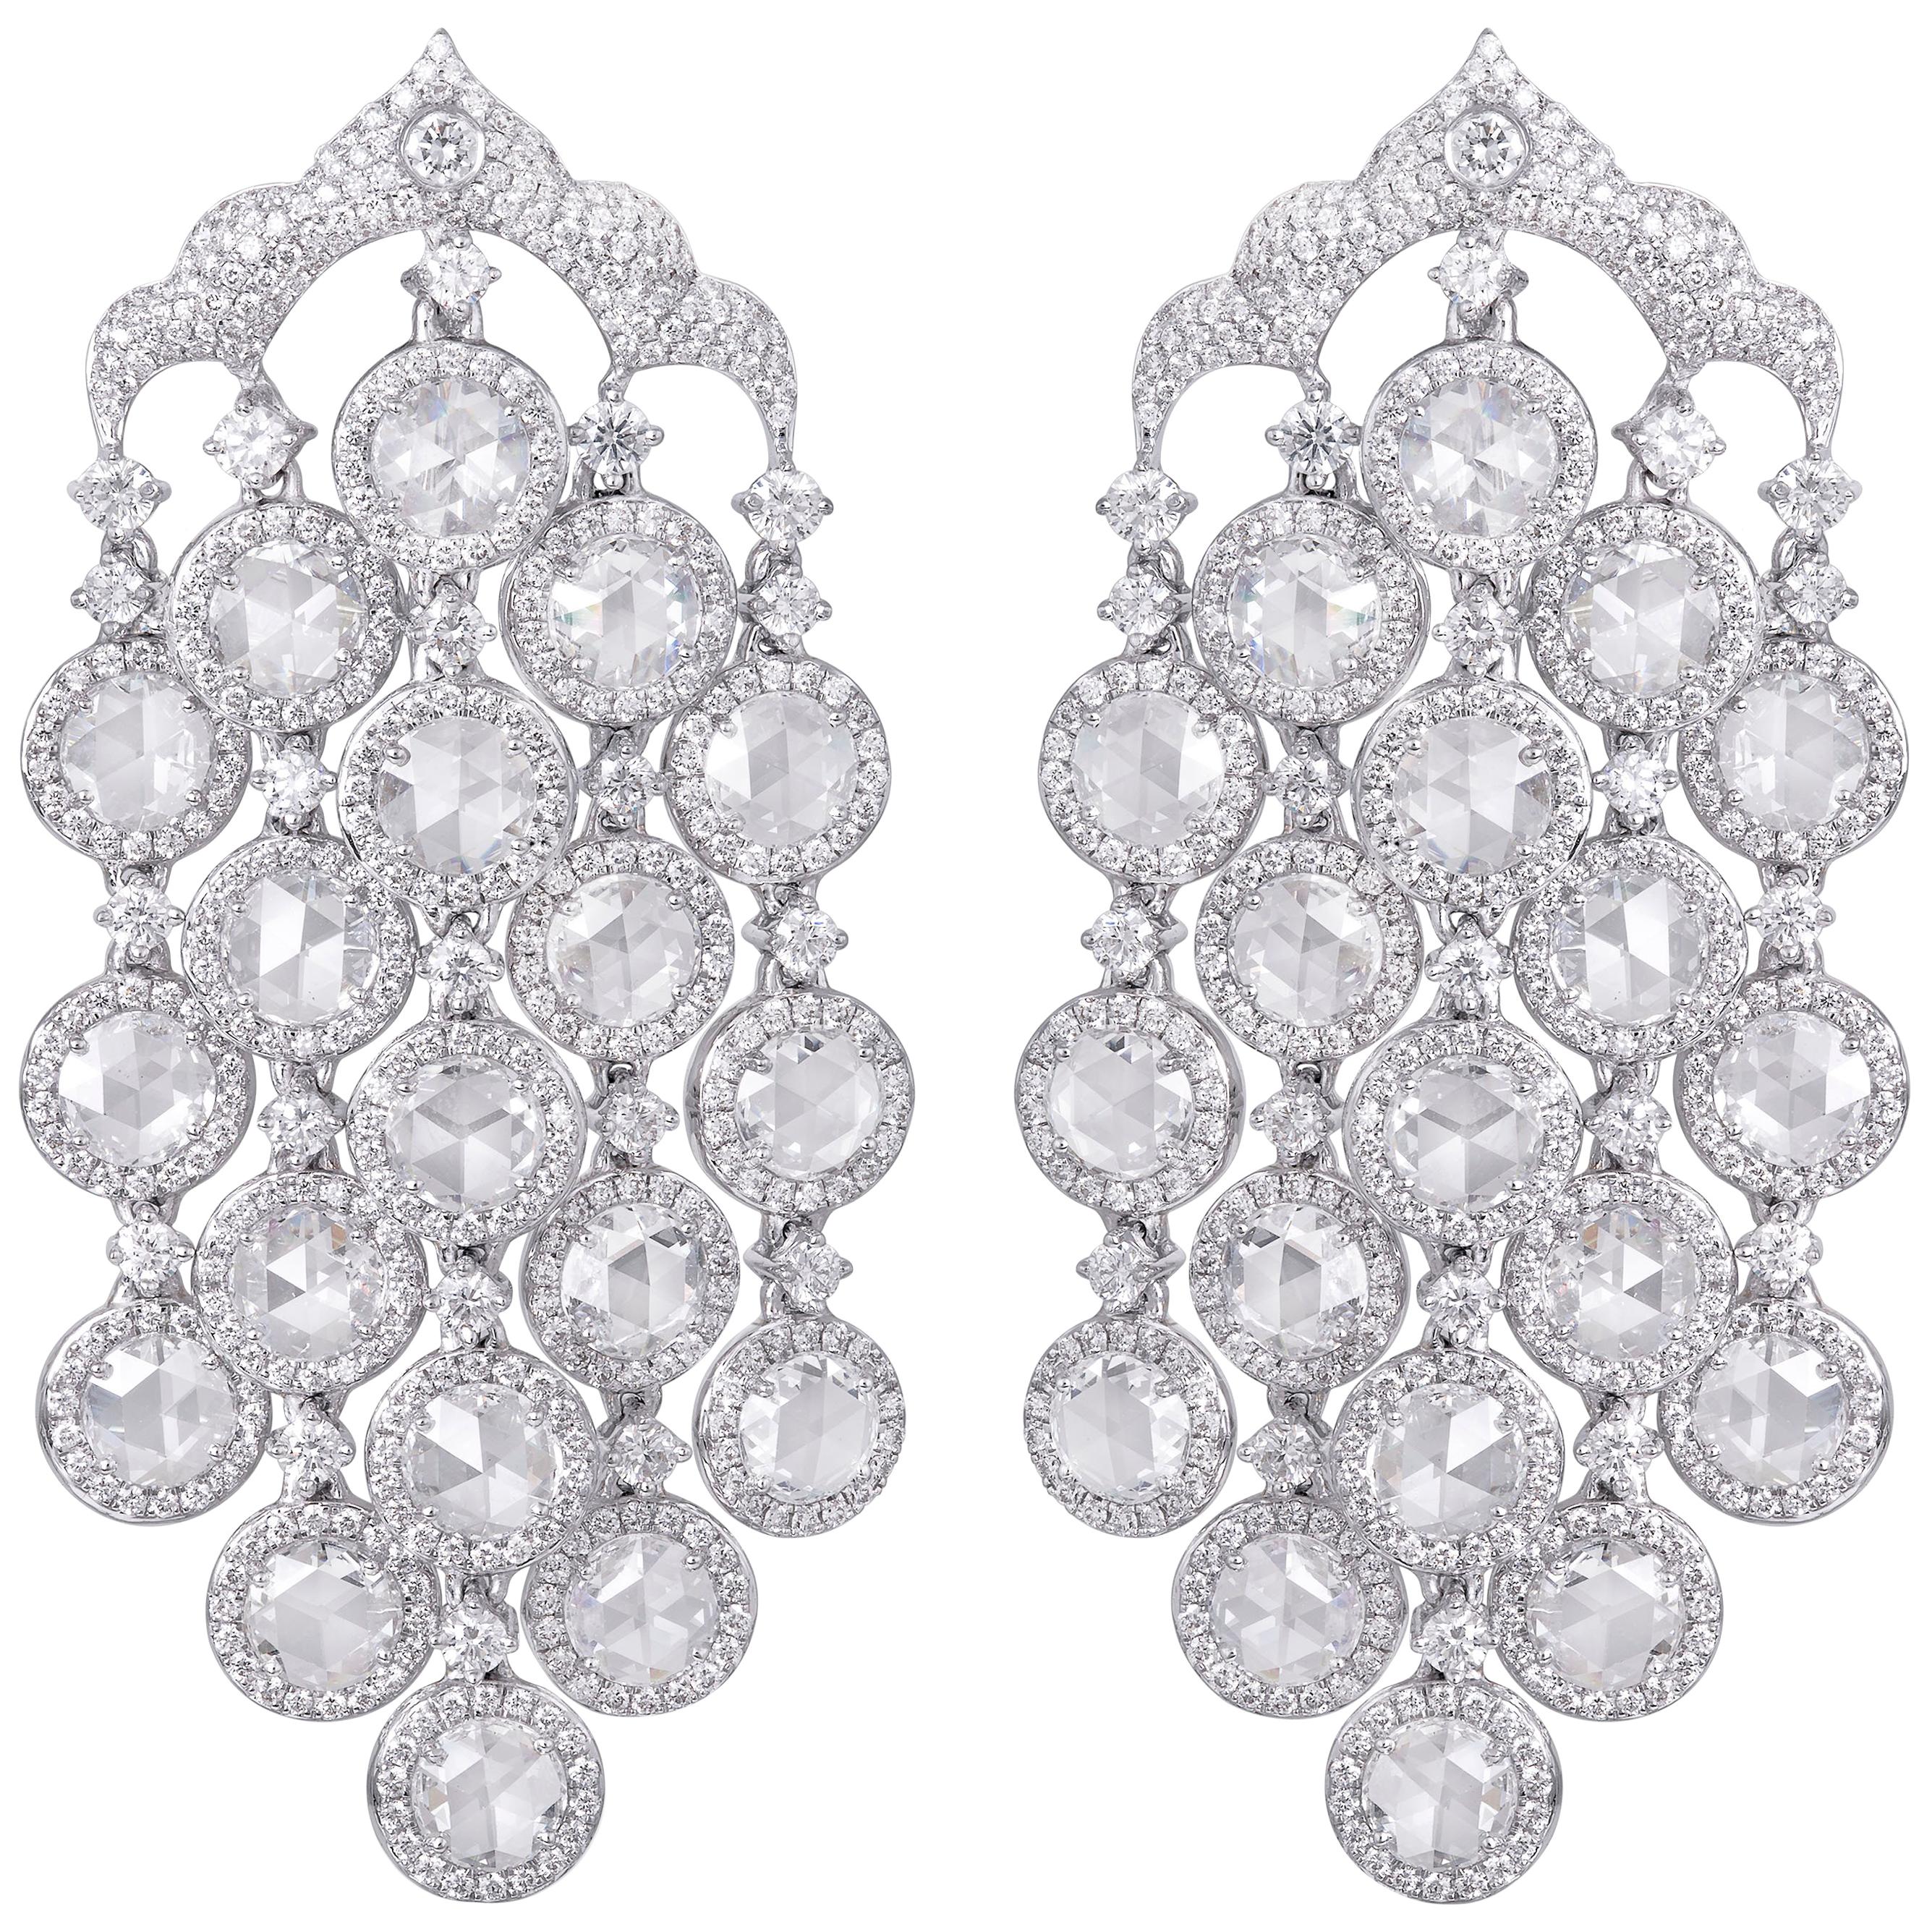 Rarever 18K White Gold 10.96cts Diamond Chandelier Earrings